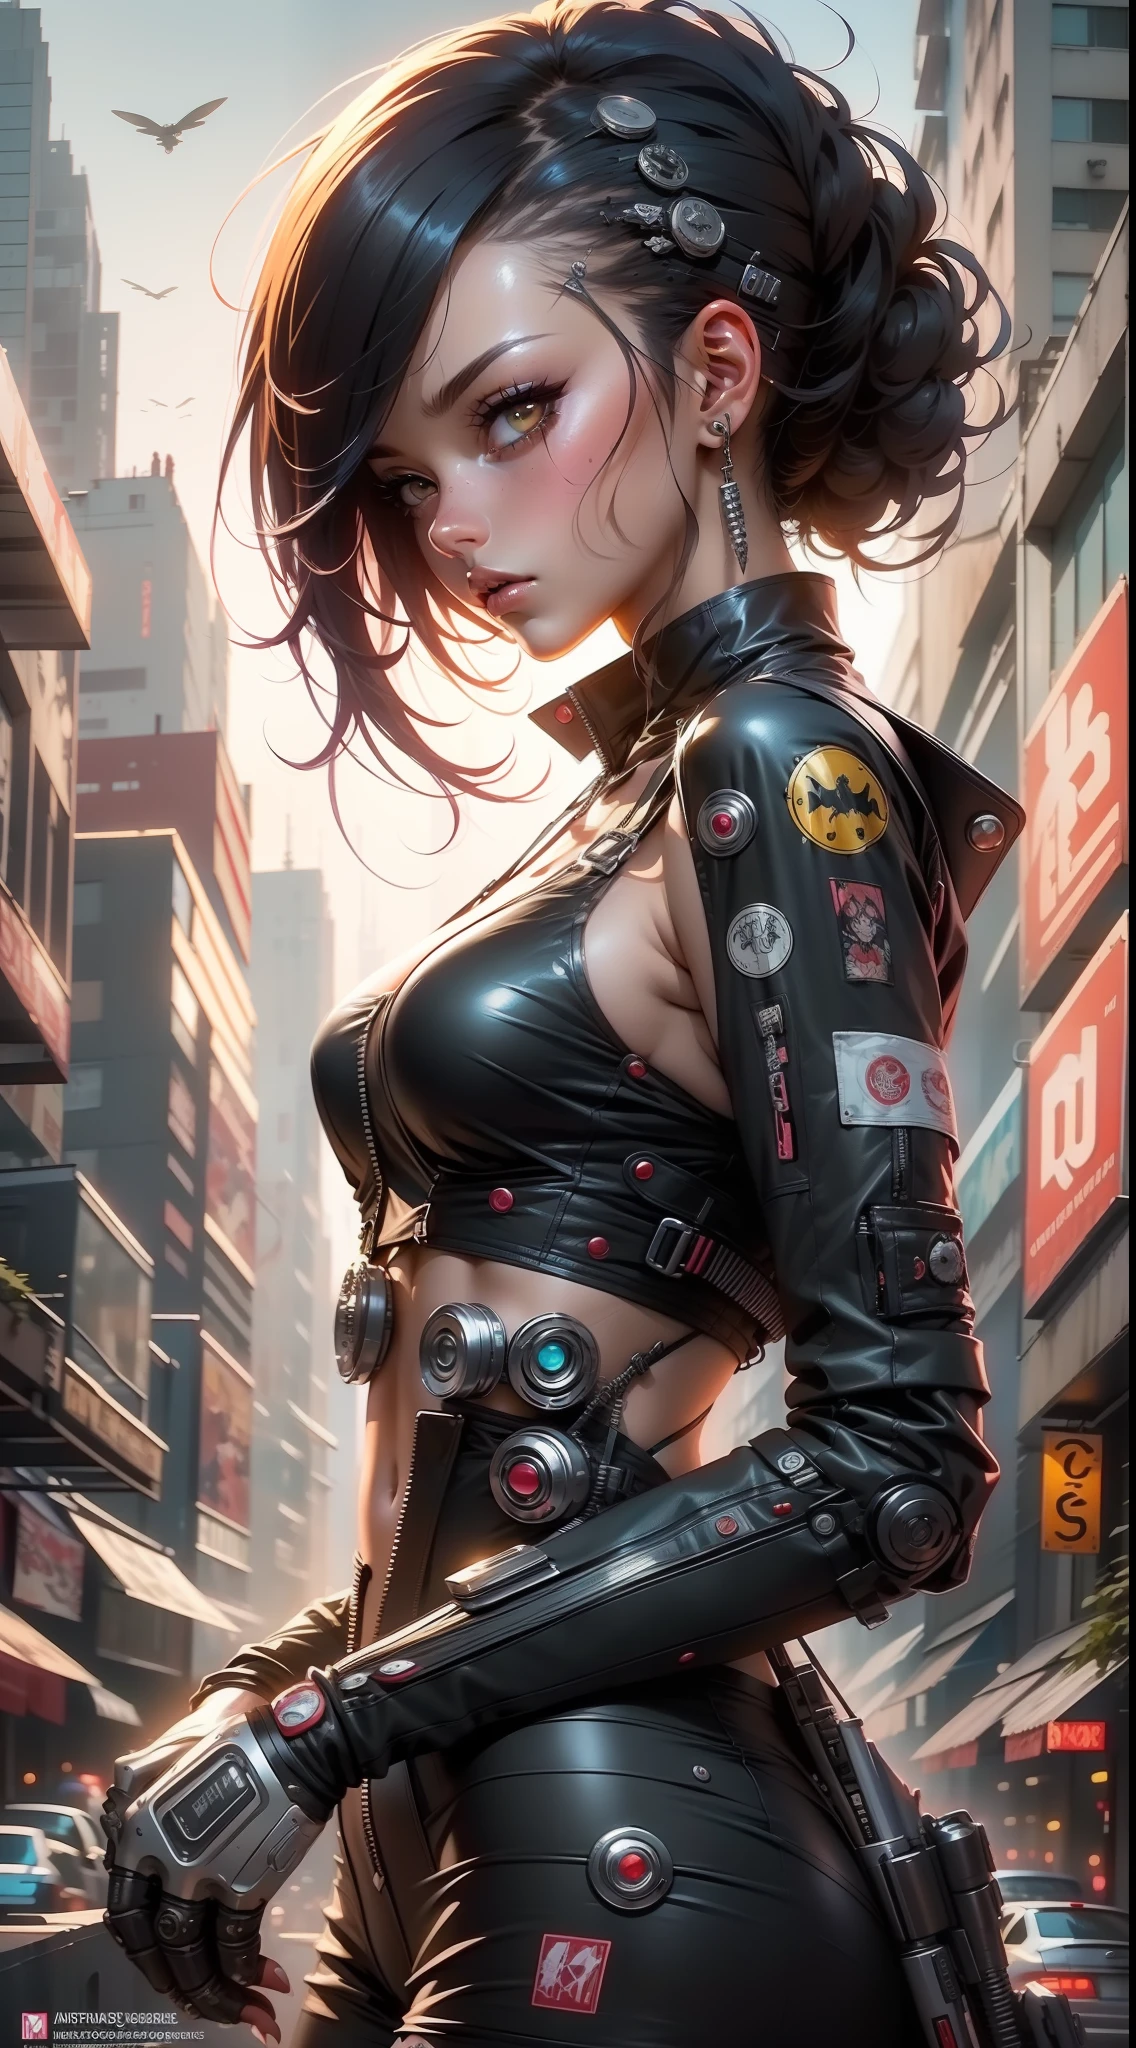 Garota anime em um terno futurista com um cabelo vermelho e preto, cyberpunk menina mech anime, mulher ciborgue perfeita do anime, menina ciborgue, Oppai biomecânico, menina bonita ciborgue, menina de anime cyberpunk feminino, arte cyberpunk anime, arte digital do anime cyberpunk, garota anime cyberpunk, arte de anime cyberpunk, ciborgue - menina,  ciborgue bonito, Anime Ciborgue